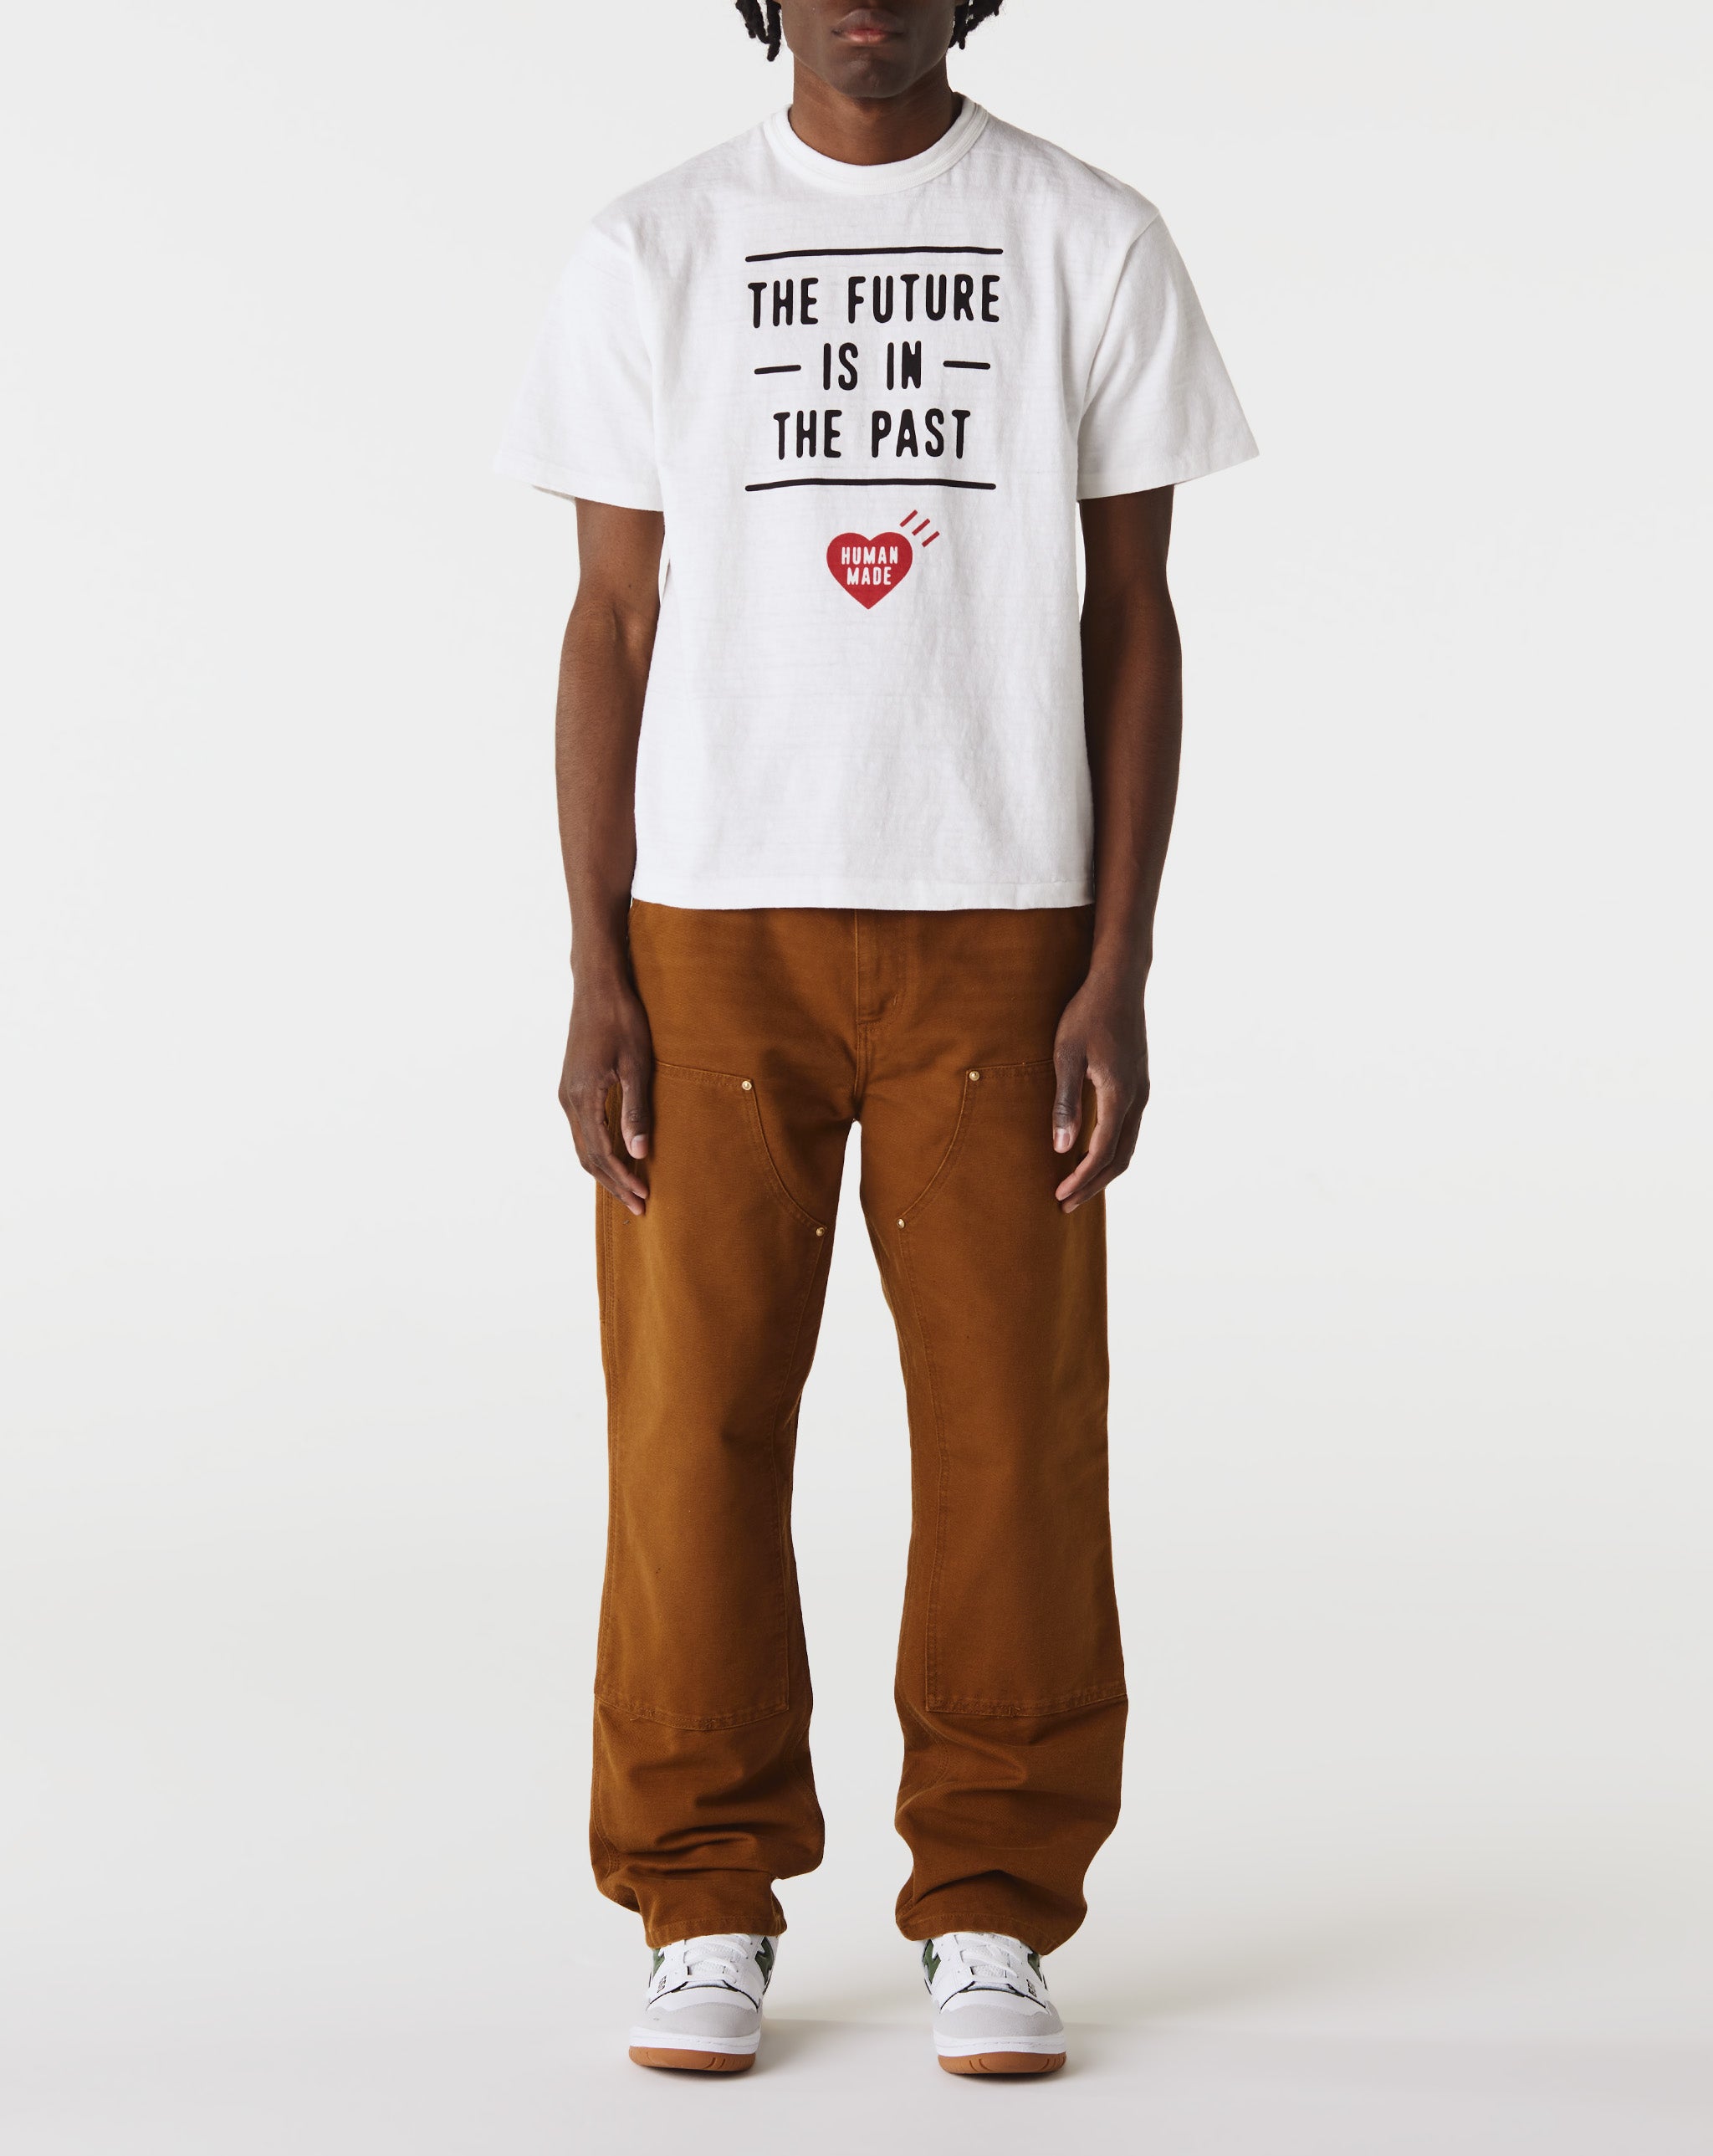 超激得限定SALEhumanmade GRAPHIC T-SHIRT #03 2XL Tシャツ/カットソー(半袖/袖なし)